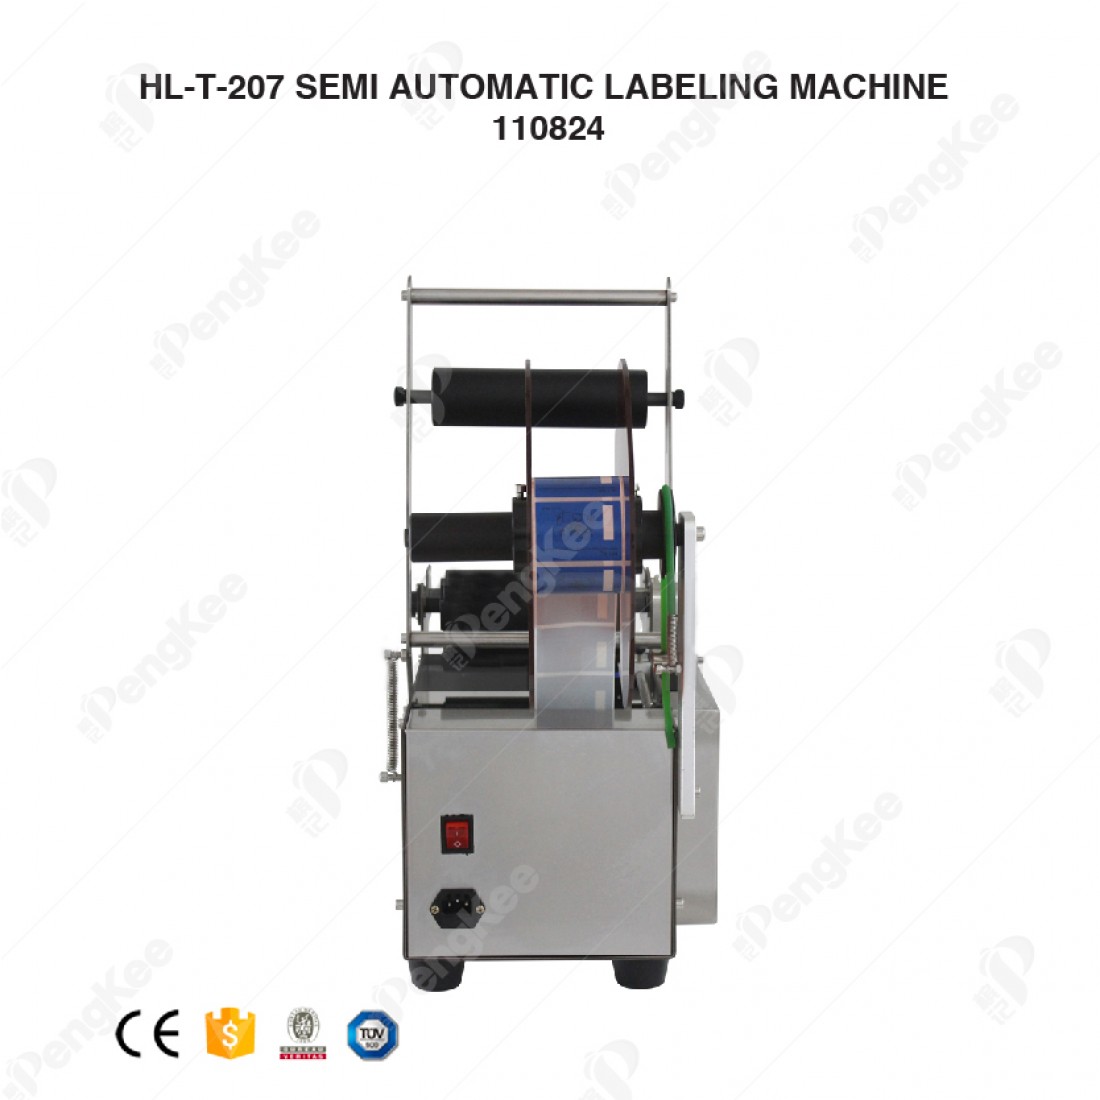 SEMI AUTOMATIC LABELING MACHINE  (MODLE:HL-T-207)